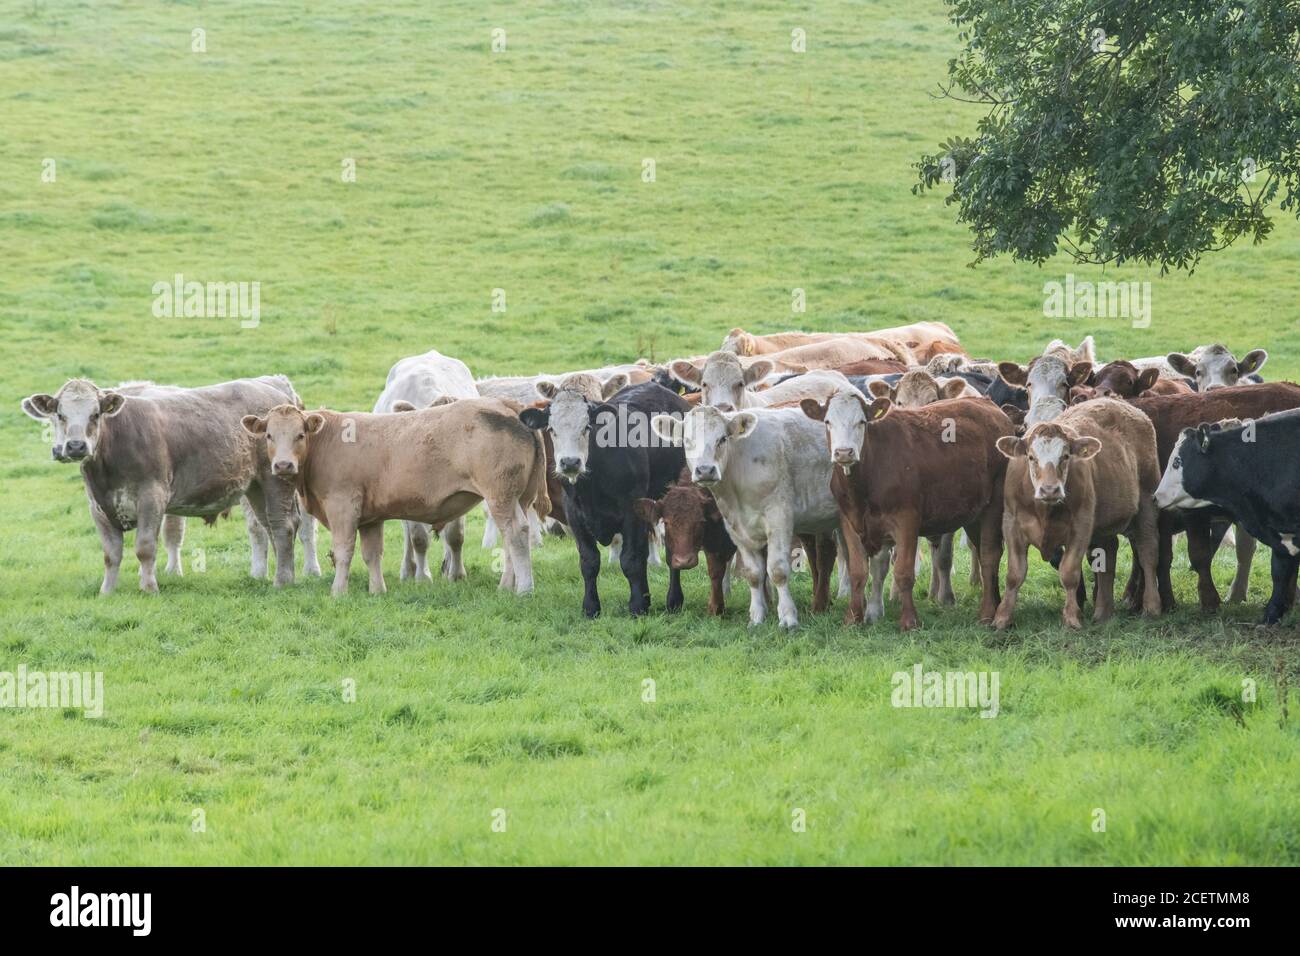 Kleine Herde junger Farren, stehend und neugierig auf die Kamera schauend. Für die britische Viehwirtschaft, britisches Rindfleisch, britische Landwirtschaft. Stockfoto